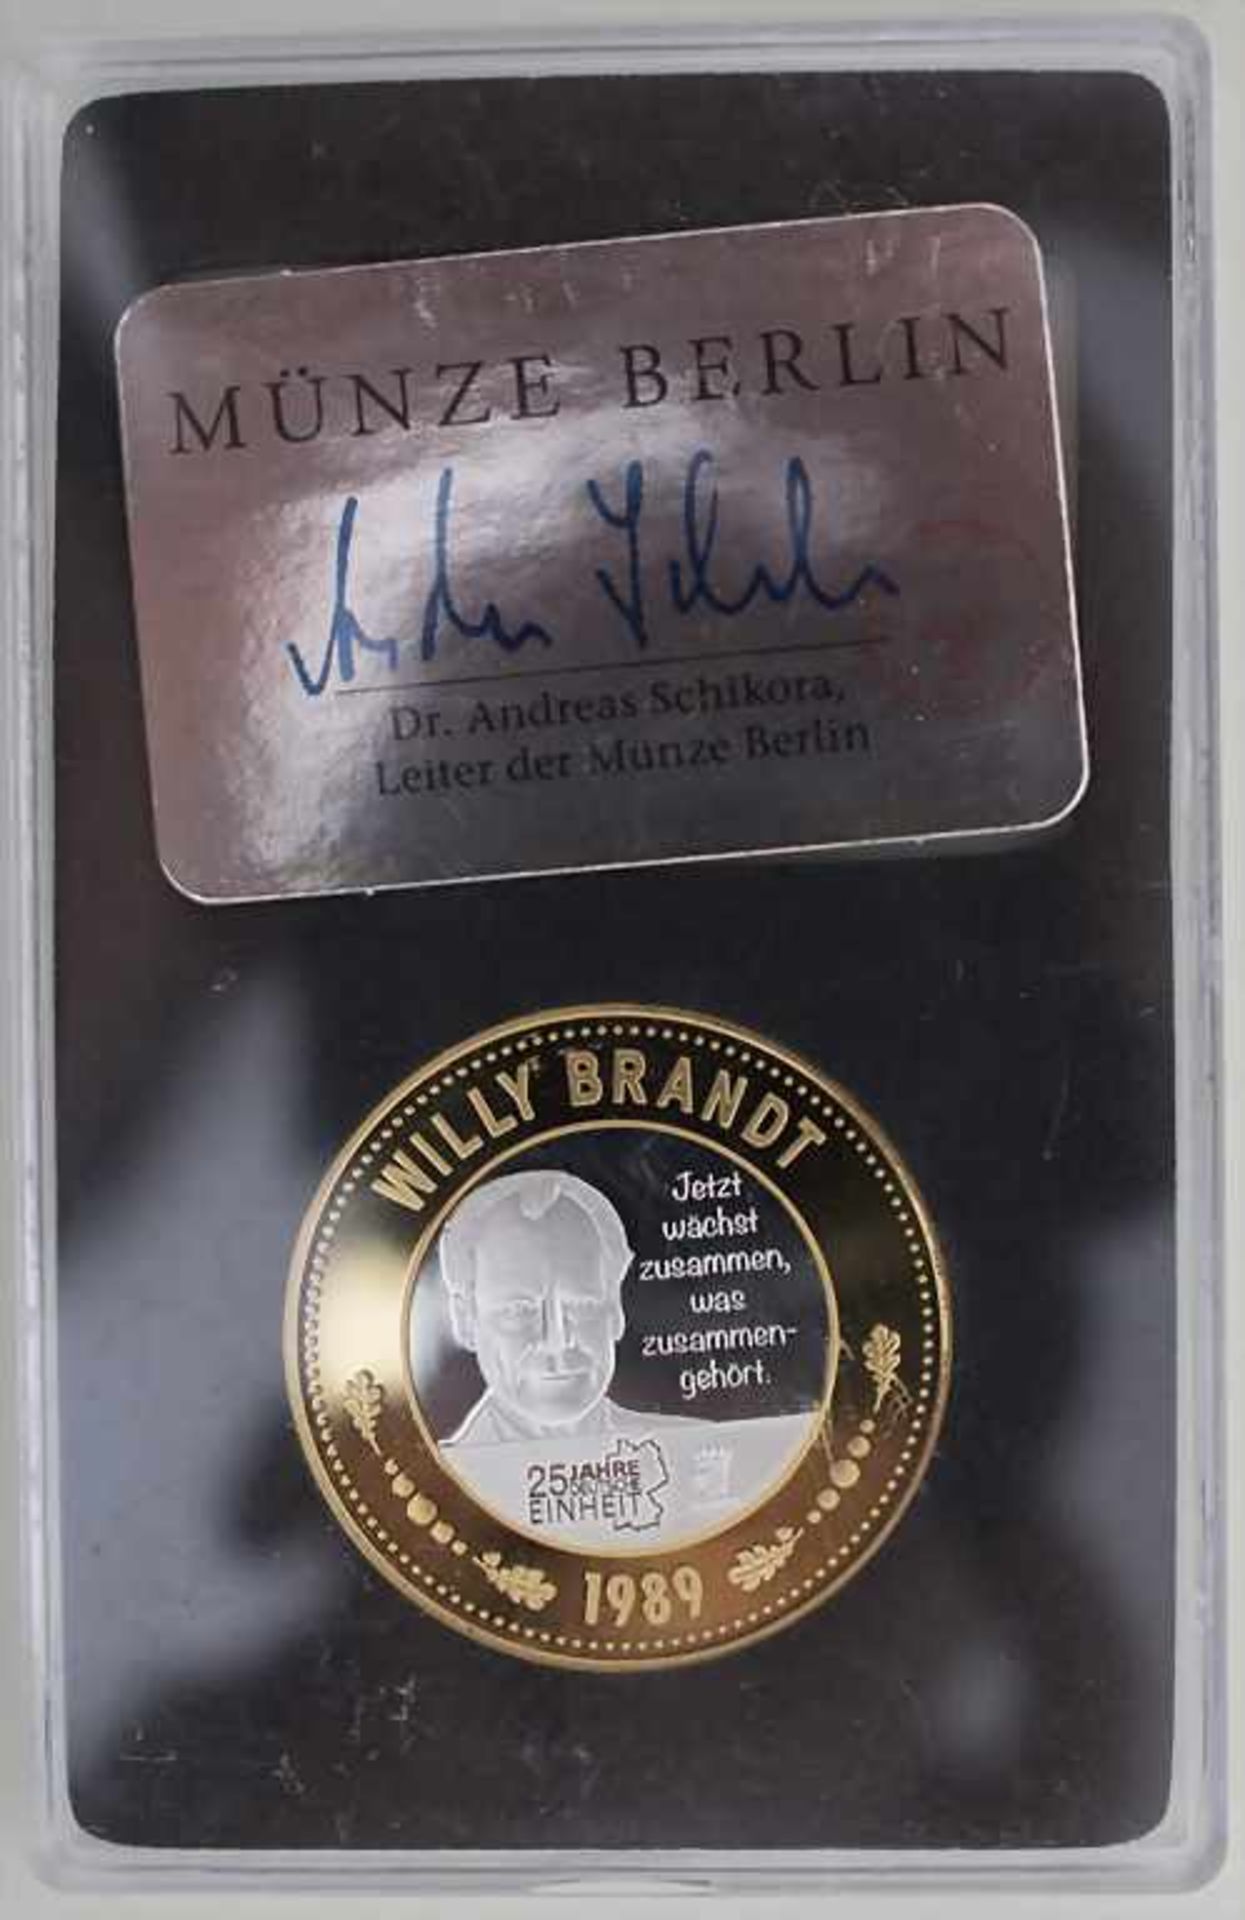 10 Medaillen 'Deutsch Einheit' / A set of 10 medals 'German Unity'Material: Feinsilber Ag 999/000, - Bild 2 aus 3